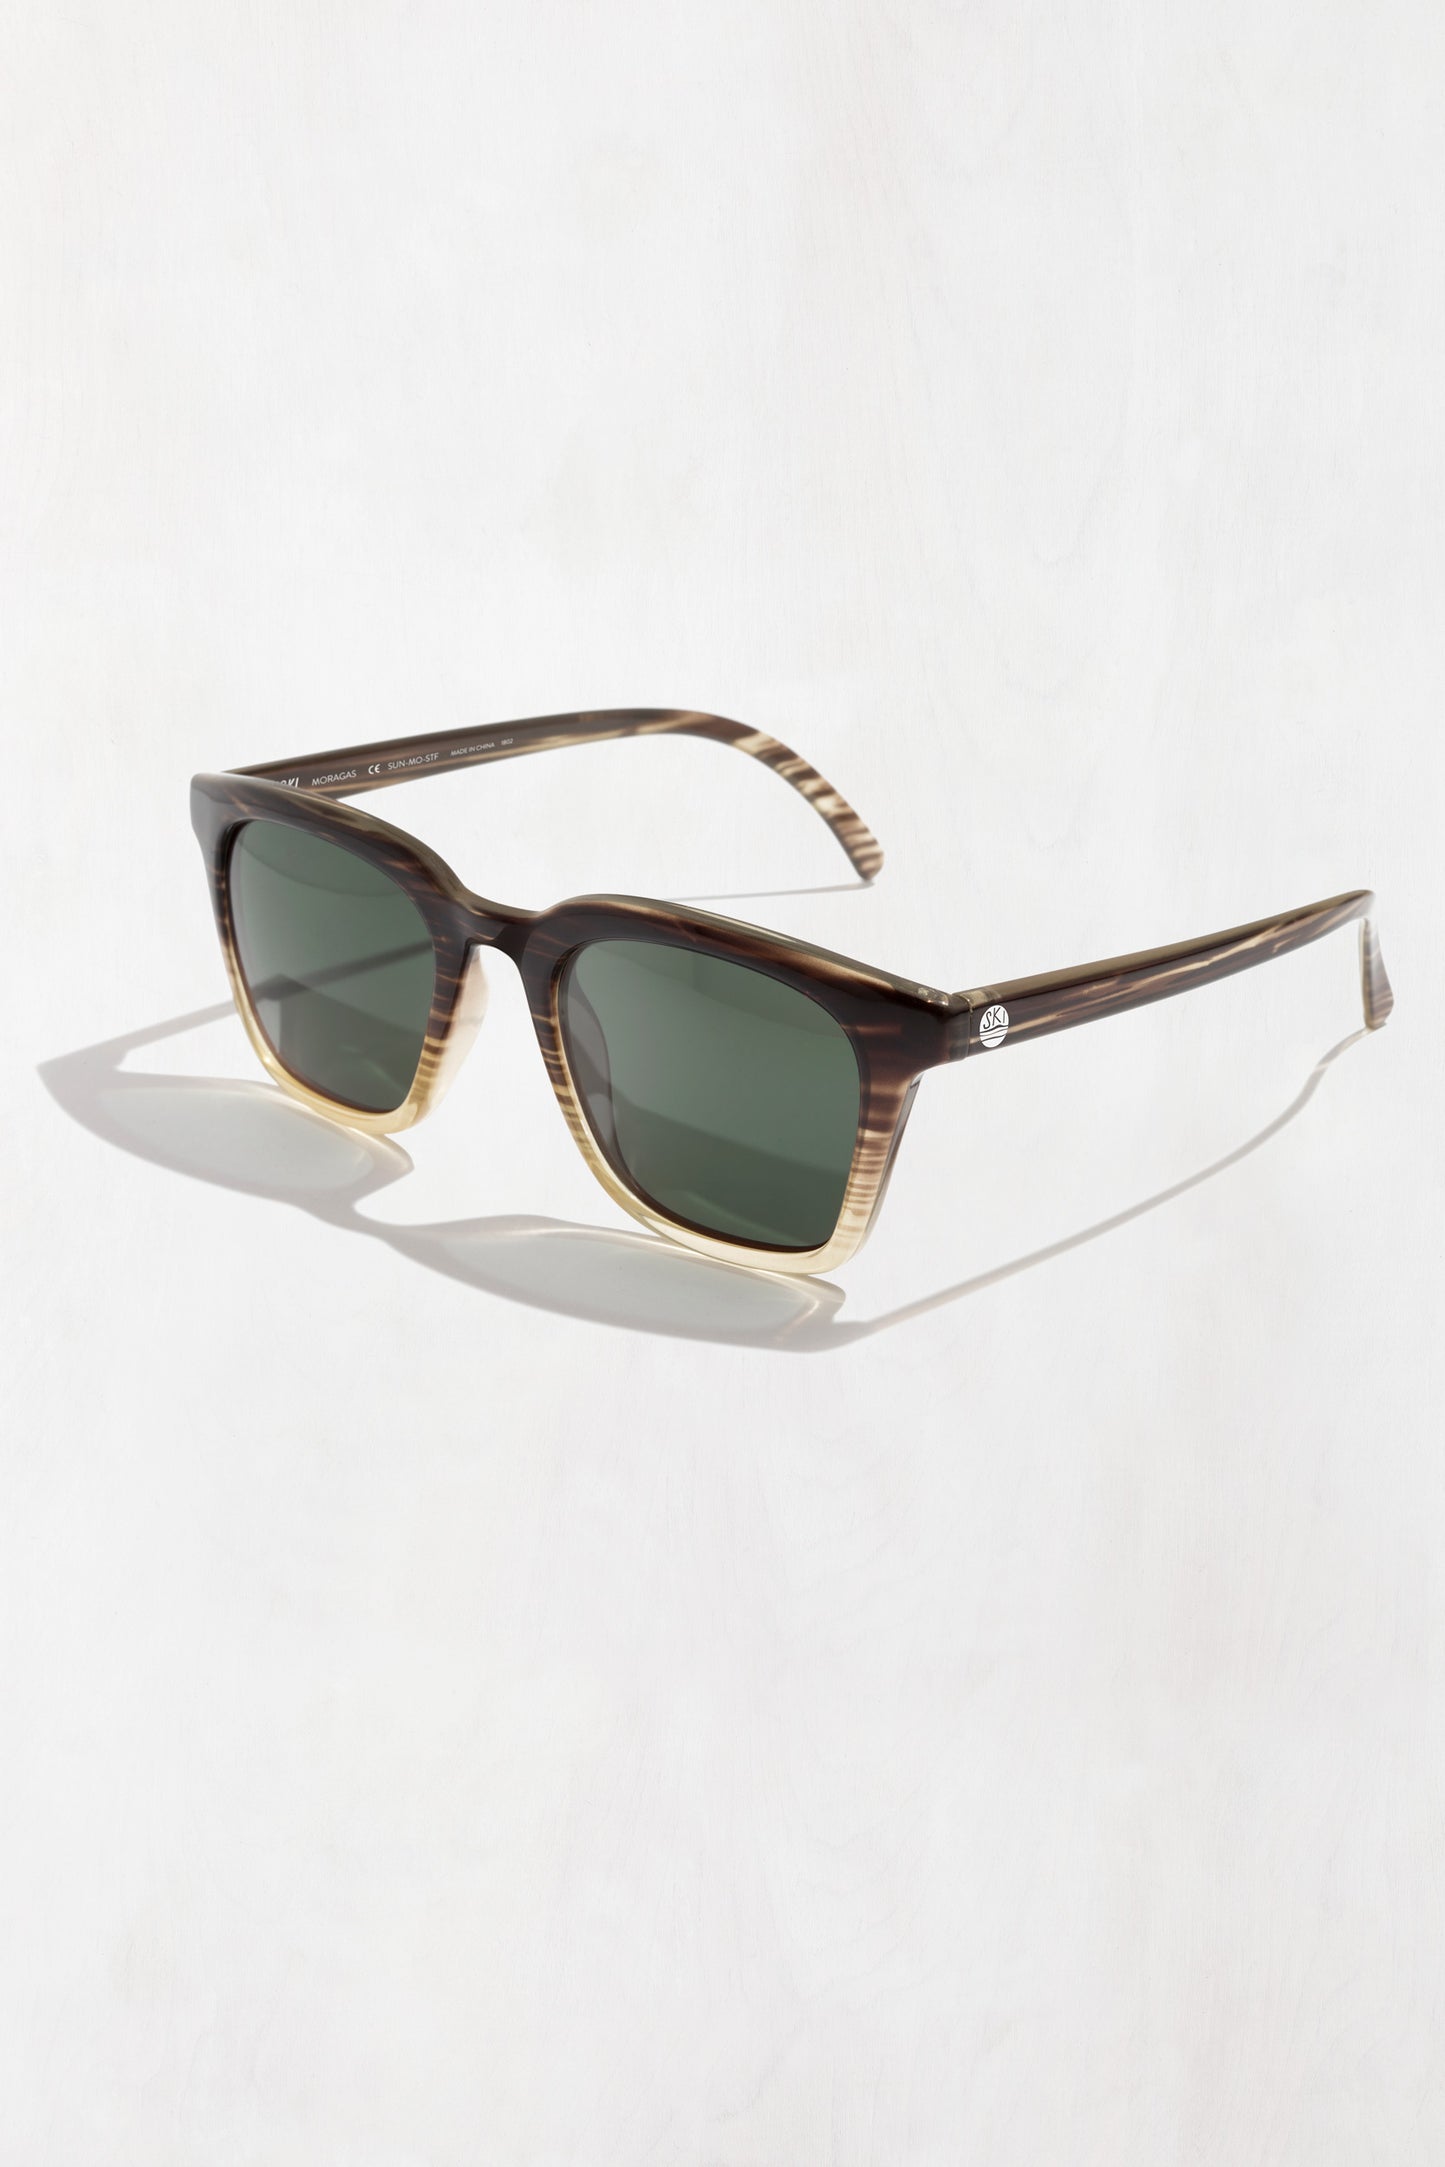 Sunski Moraga Sunglasses